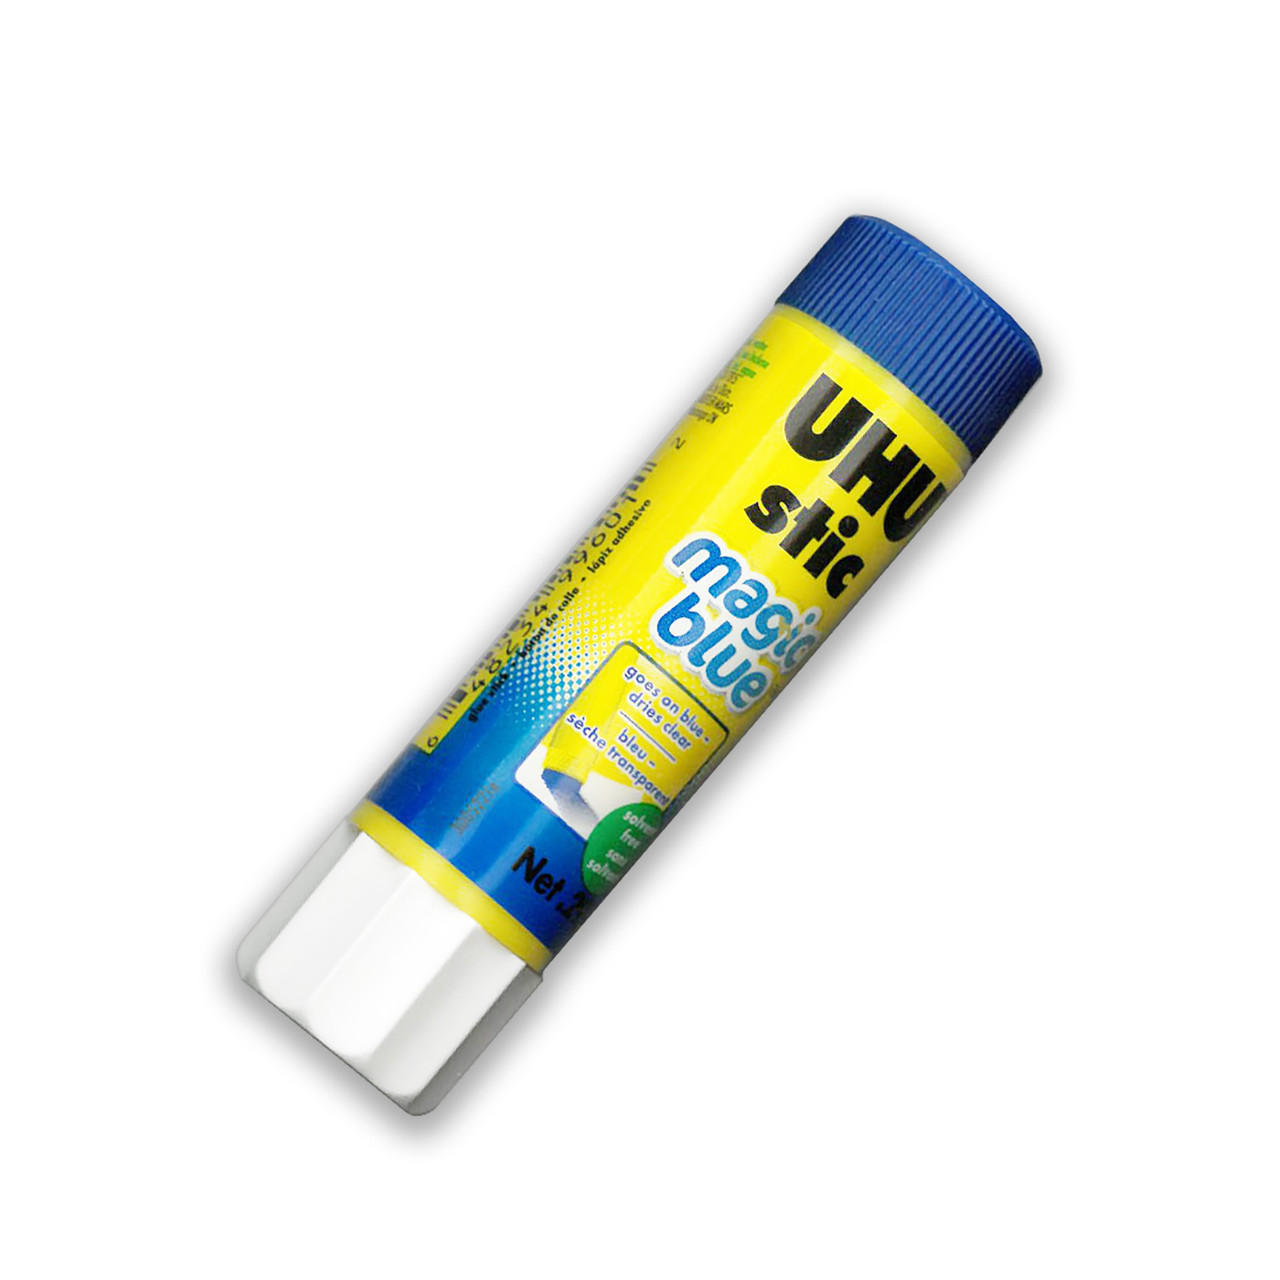 UHU Stic Glue Stick